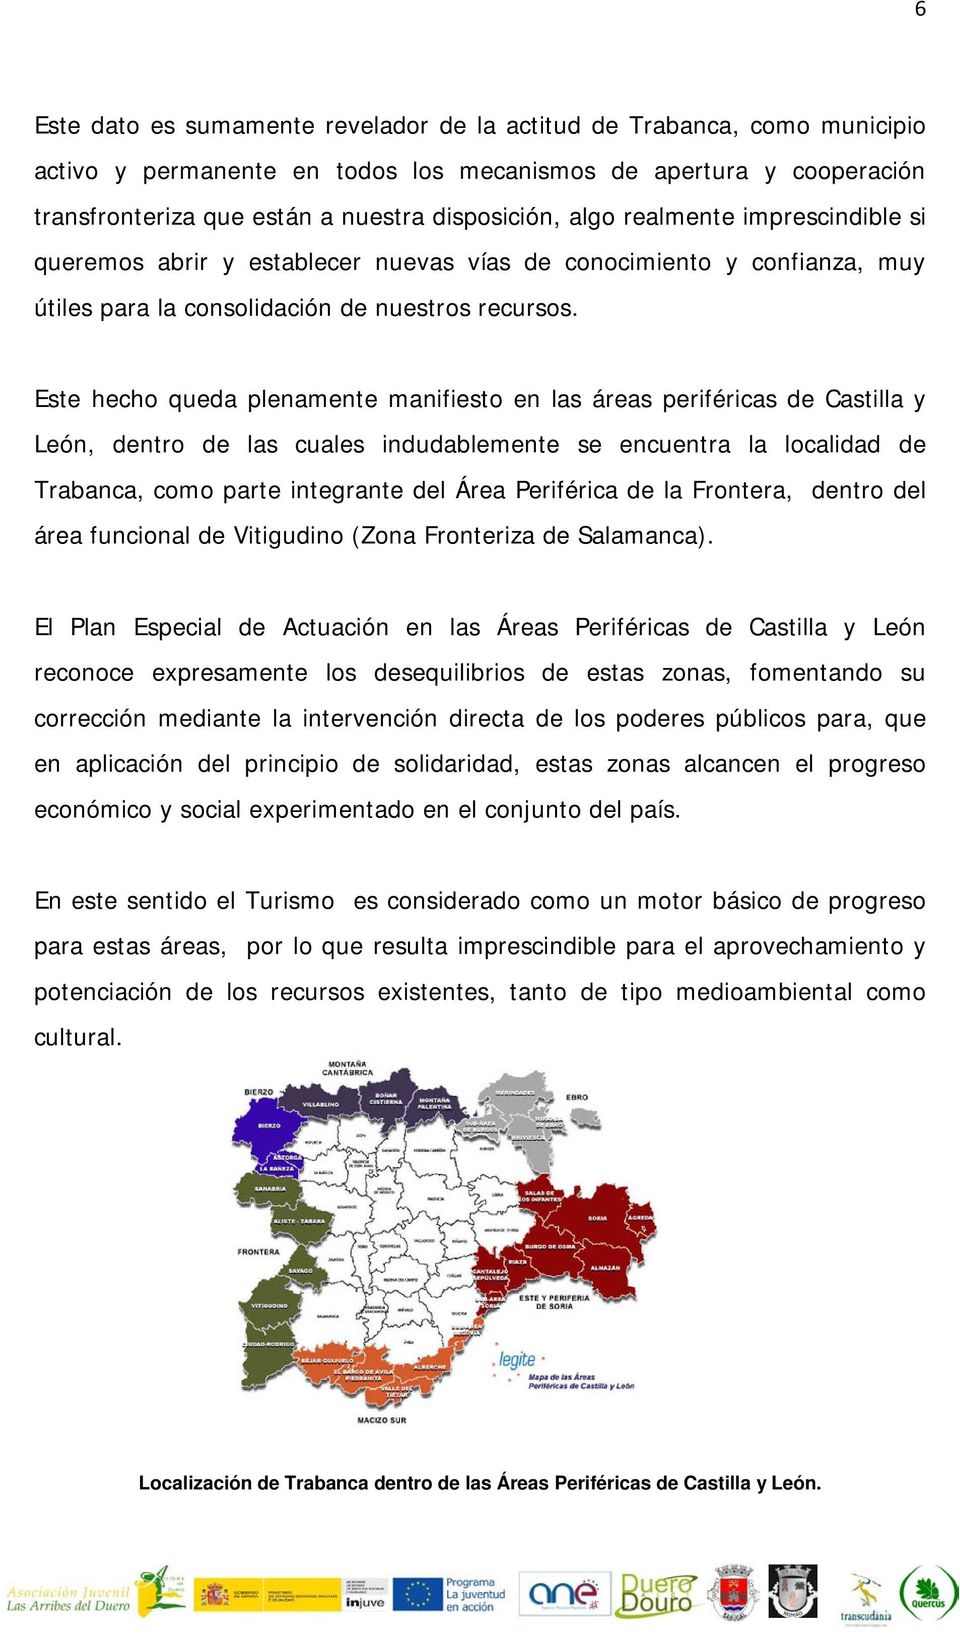 Este hecho queda plenamente manifiesto en las áreas periféricas de Castilla y León, dentro de las cuales indudablemente se encuentra la localidad de Trabanca, como parte integrante del Área